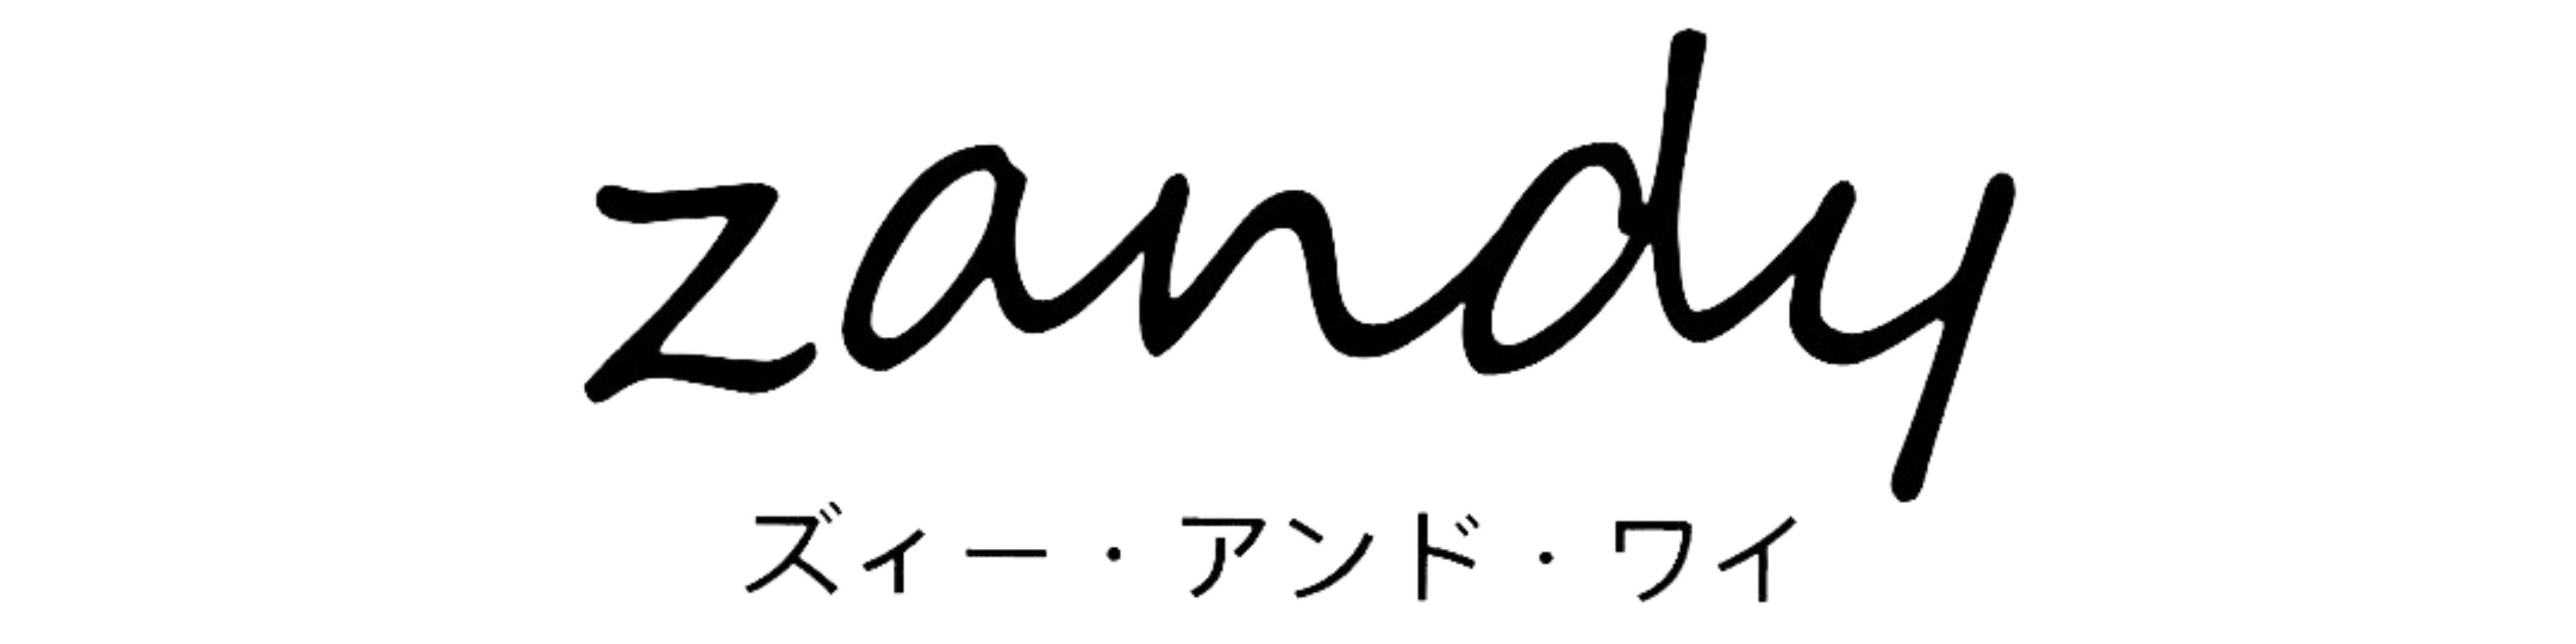 zandy(ズィー・アンド・ワイ) ロゴ